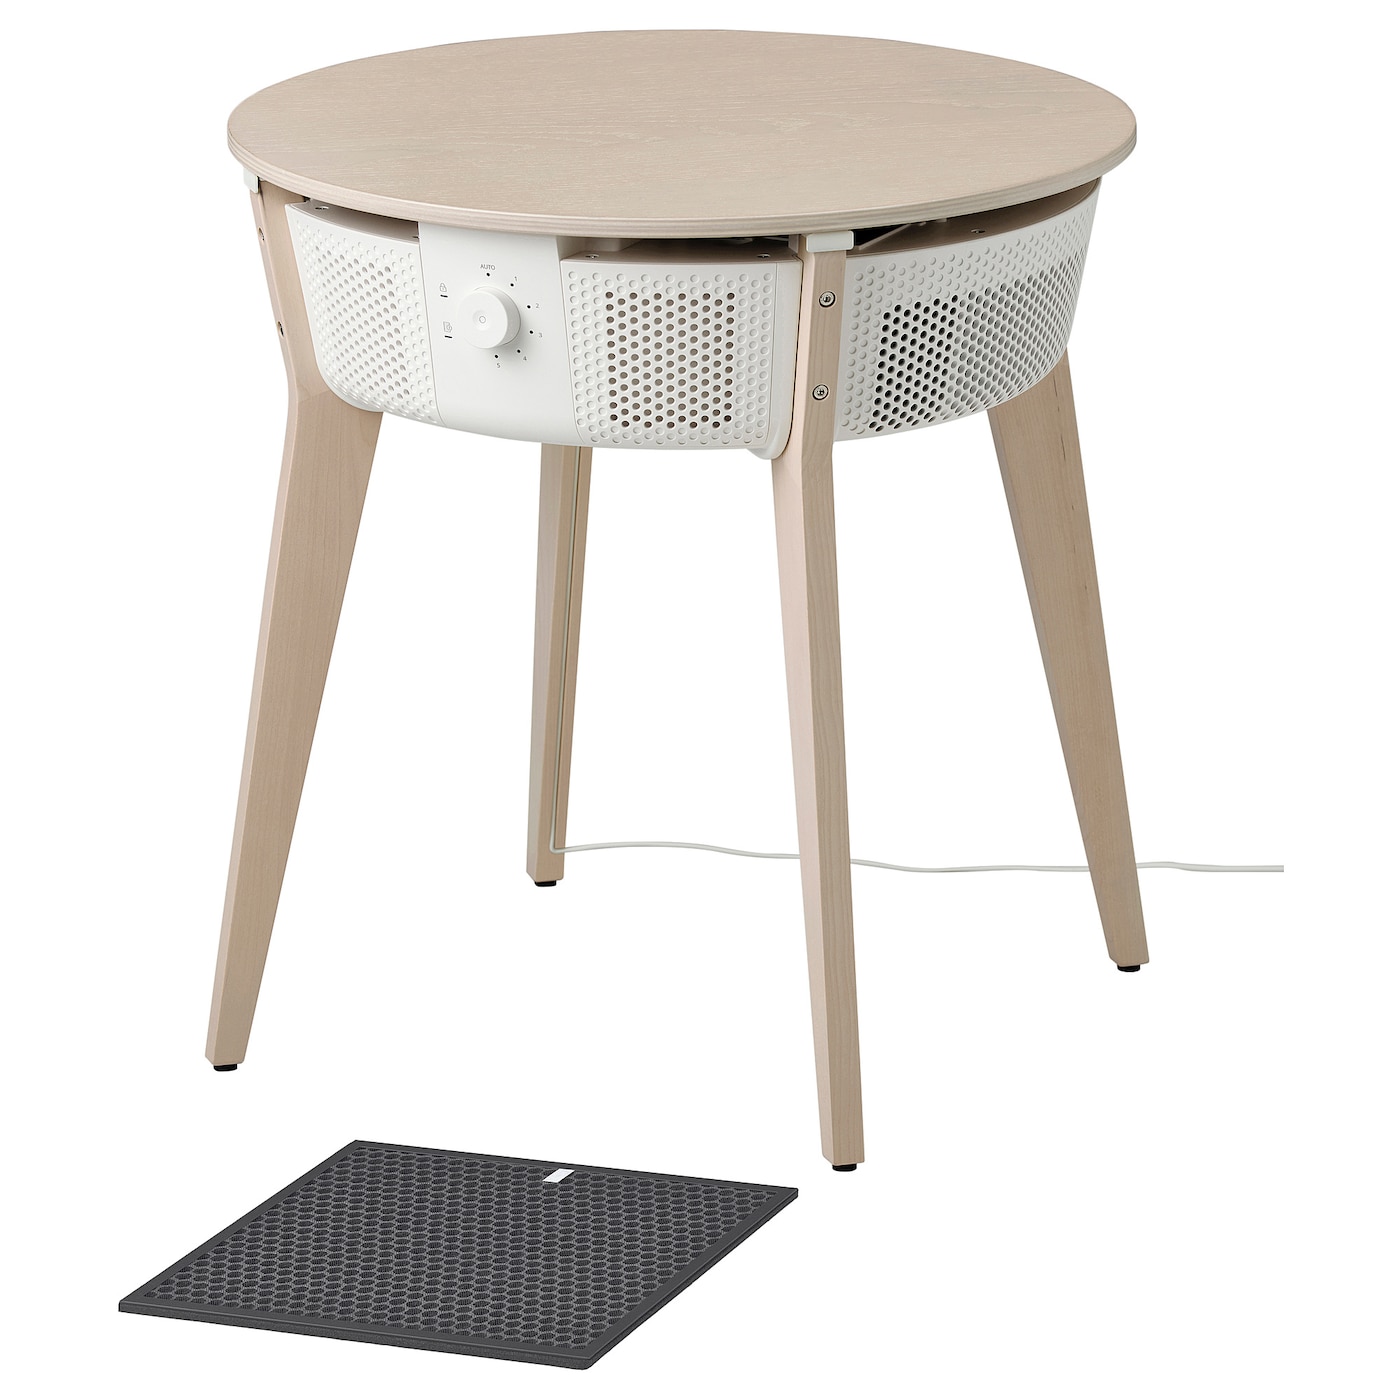 Стол с очистителем воздуха со сменным фильтром - IKEA STARKVIND, 56х56 см, белый, СТАРКВИНД ИКЕА